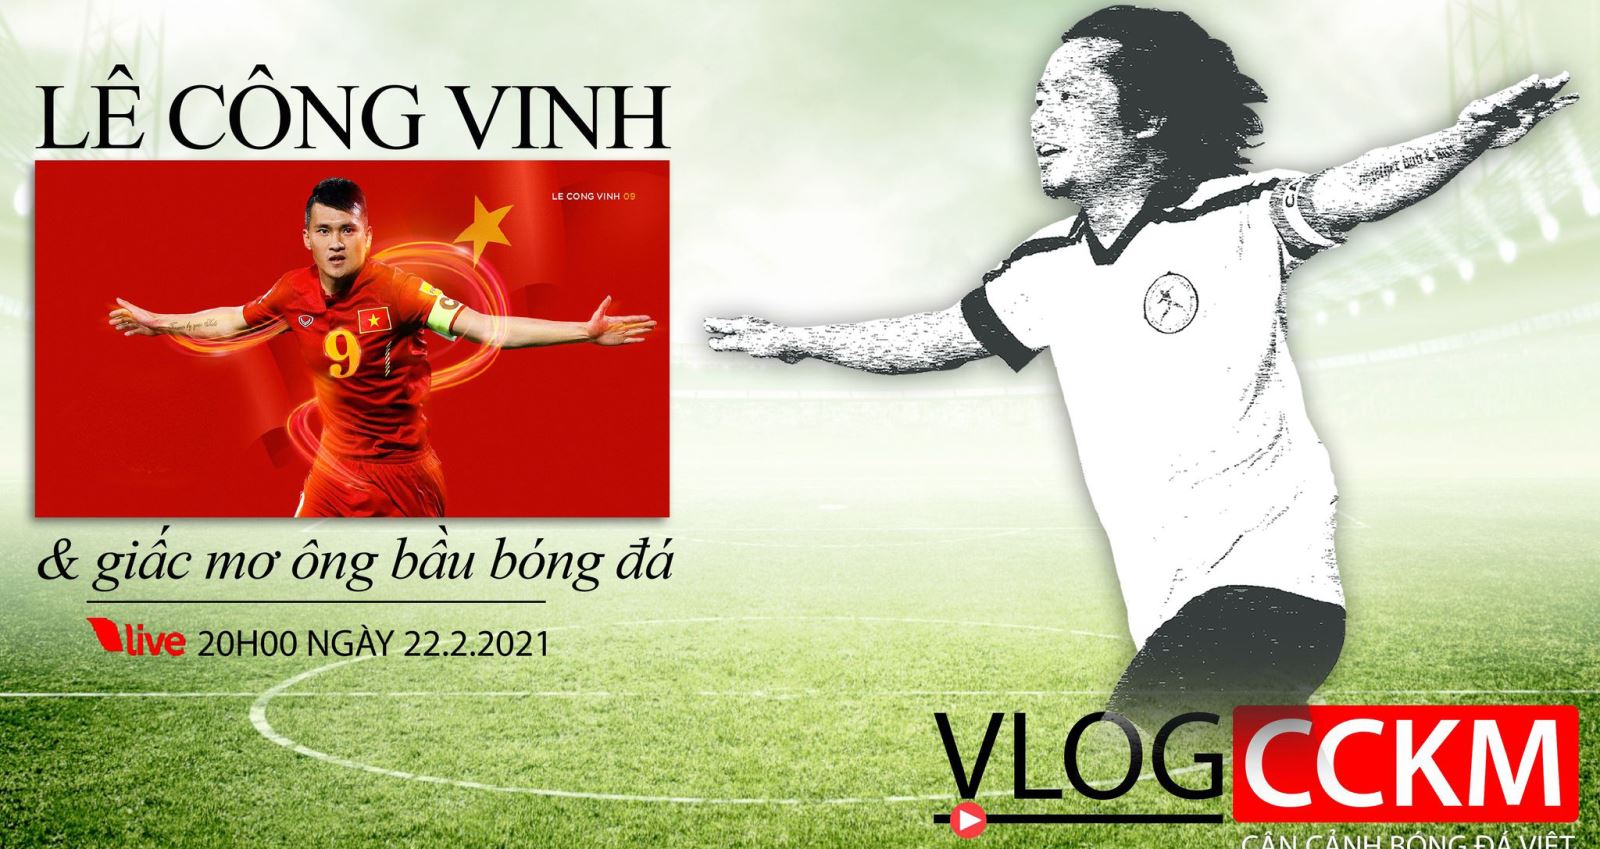 Lê Công Vinh, CCKM, bóng đá, bóng đá Việt, V-League, Trần Hải